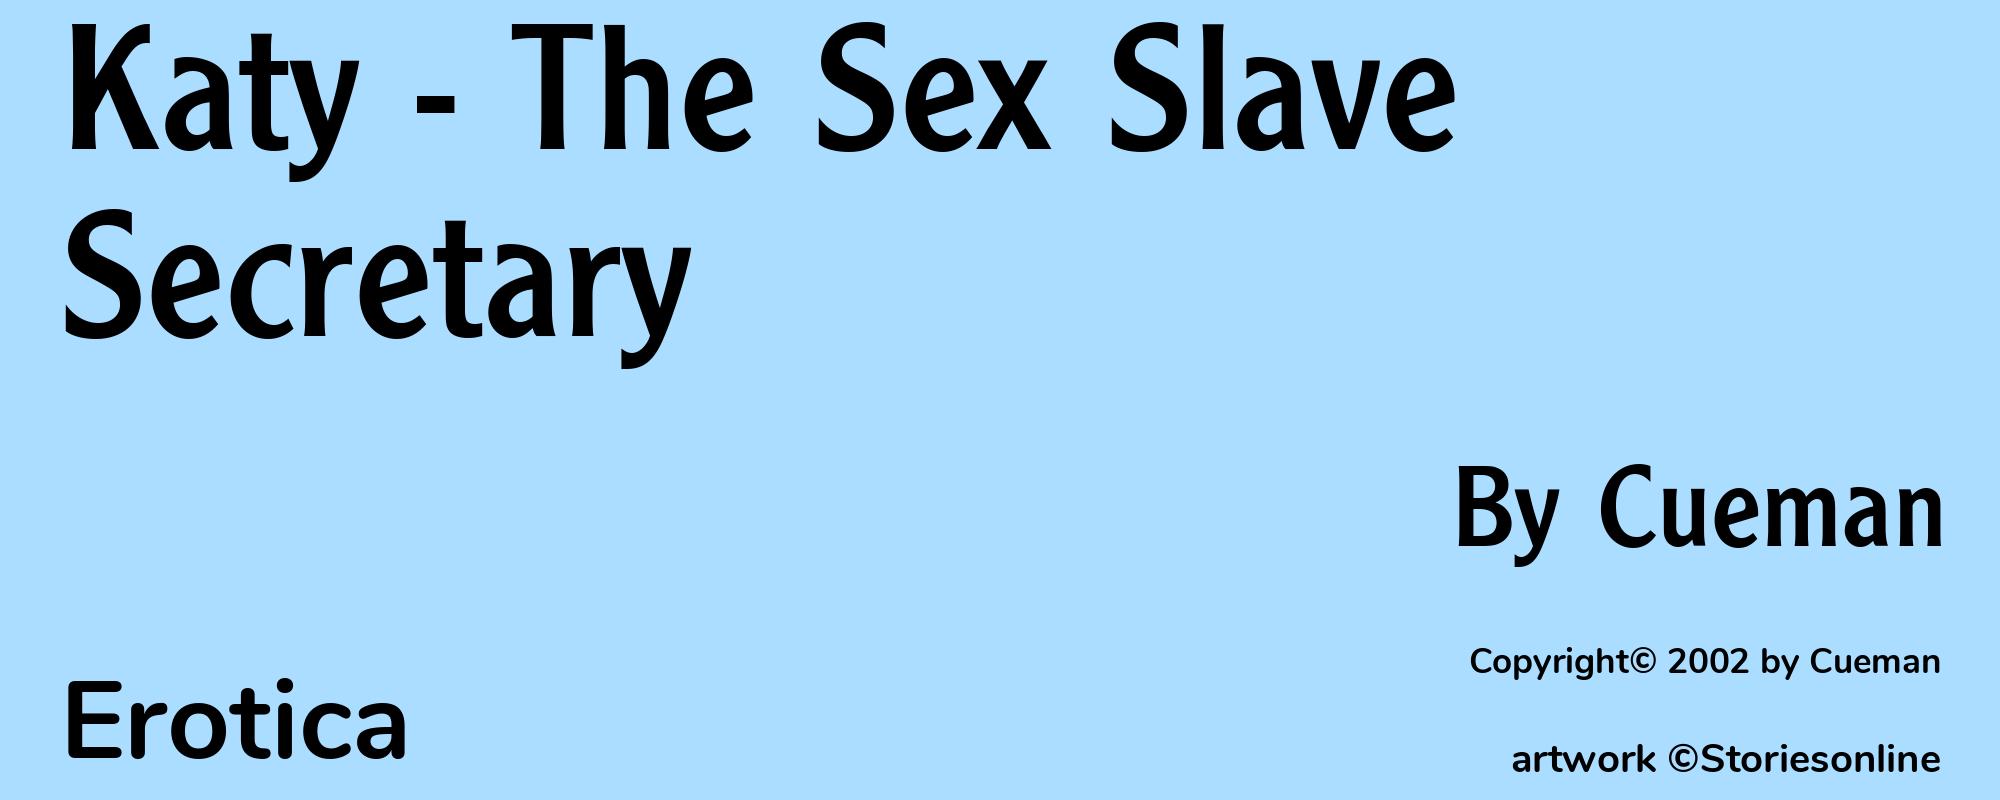 Katy - The Sex Slave Secretary - Cover